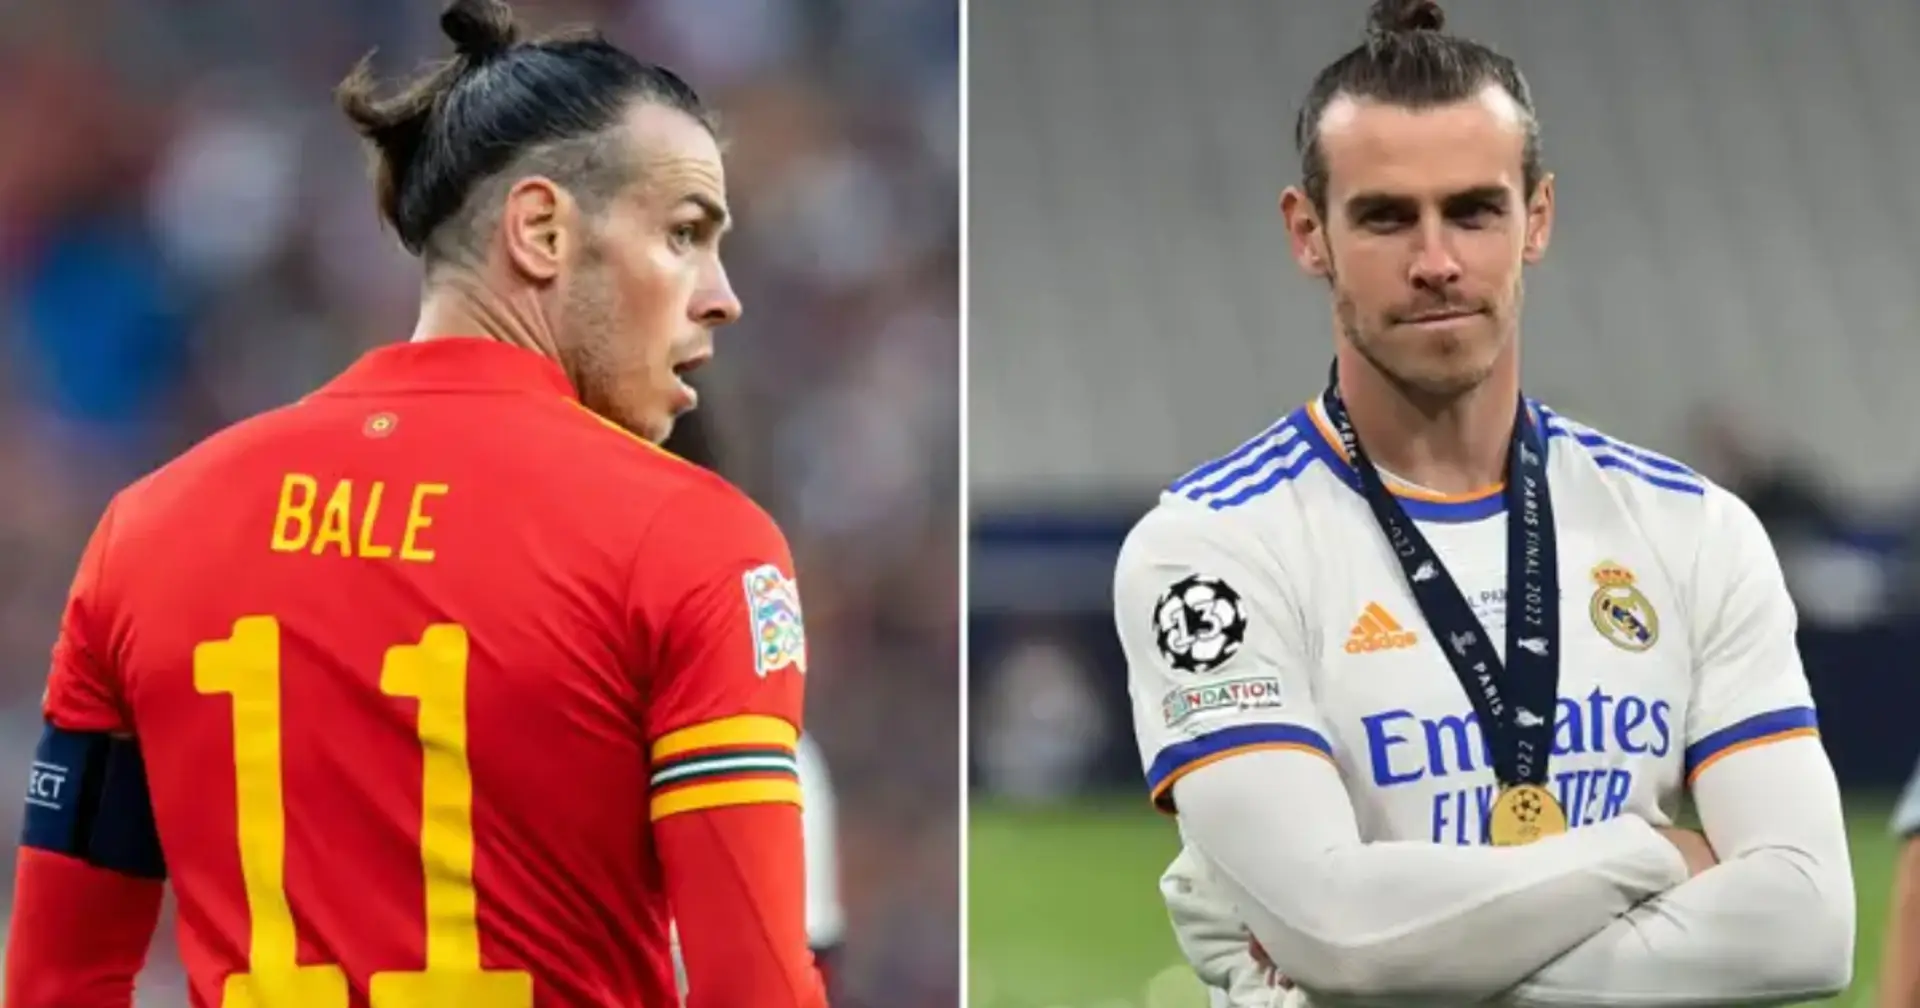 Obwohl Bale sein Karriereende erst am Montag verkündete, wurde ihm die Rückkehr in den Fußball bereits angeboten